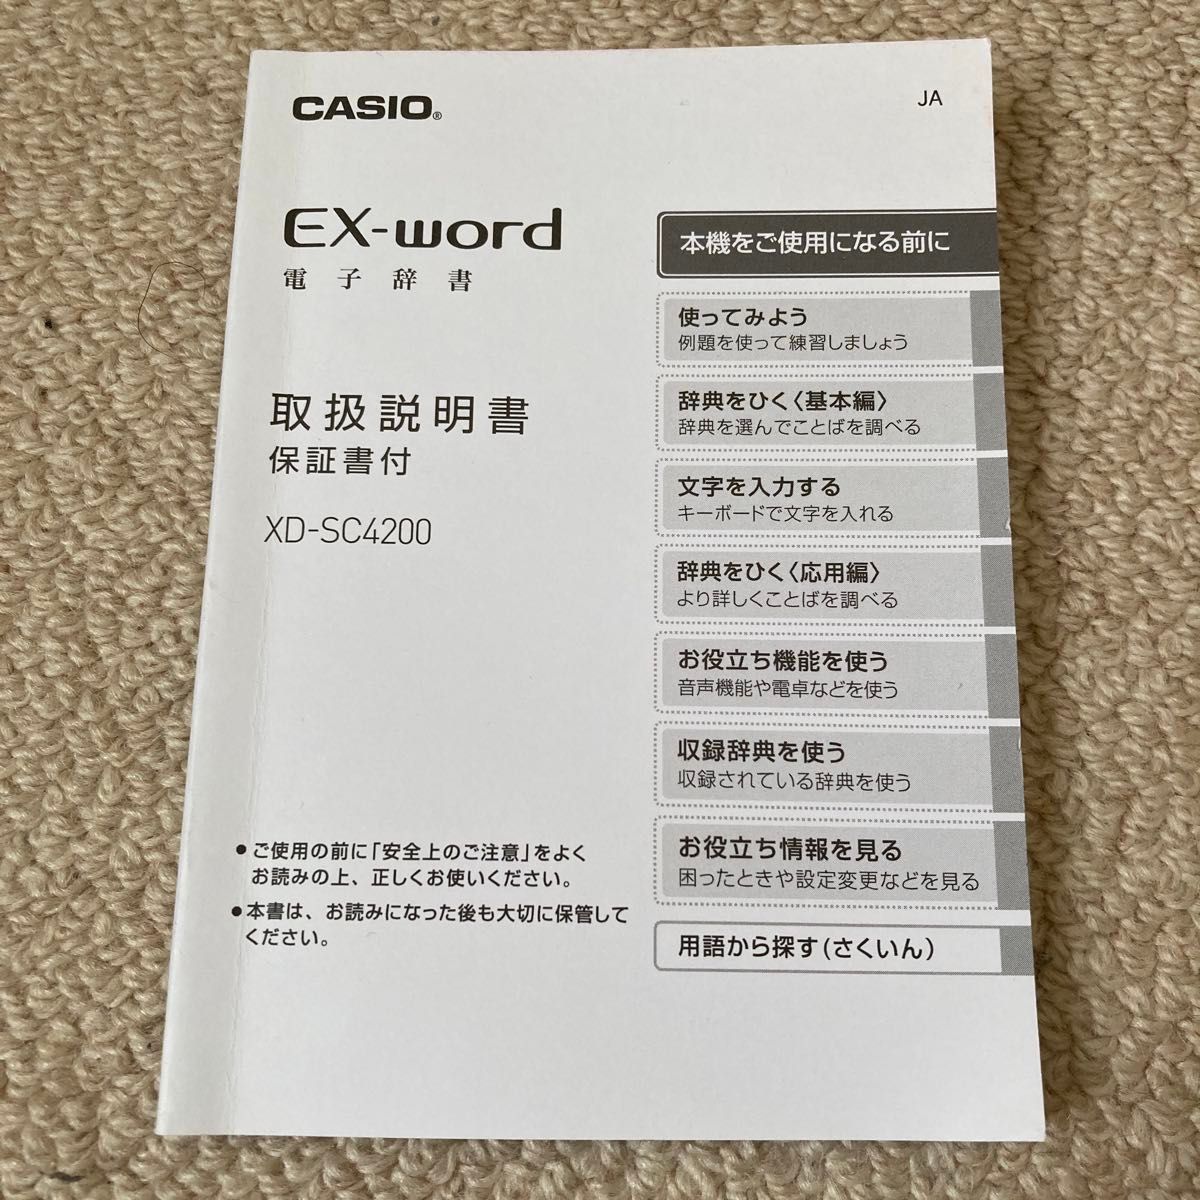 CACIO EX-word電子辞書の取扱説明書 箱